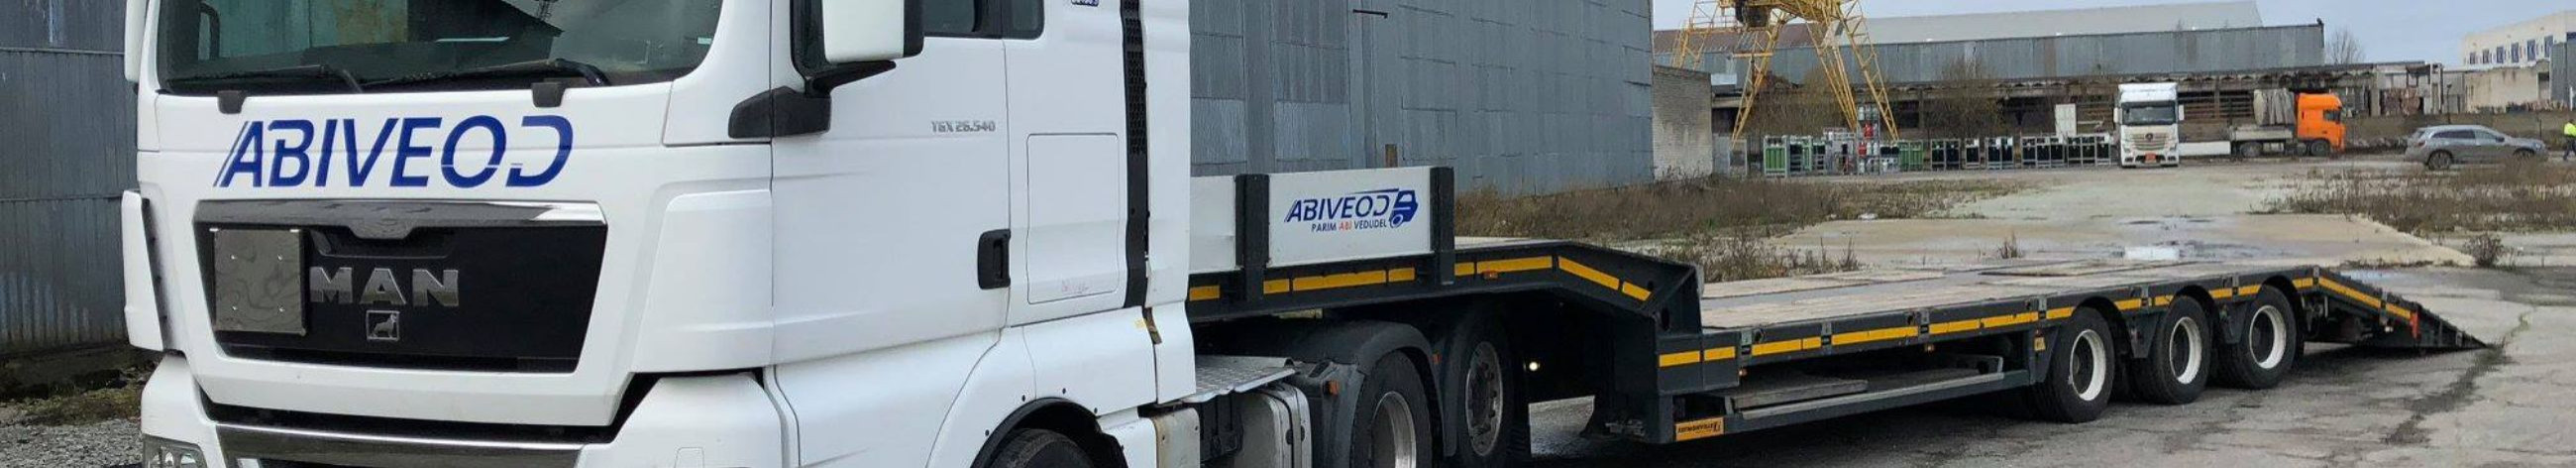 Suurim mainega ettevõte ABIVEOD OÜ, maineskoor 2940, aktiivseid äriseoseid 2. Tegutseb peamiselt valdkonnas: Kaubavedu maanteel.